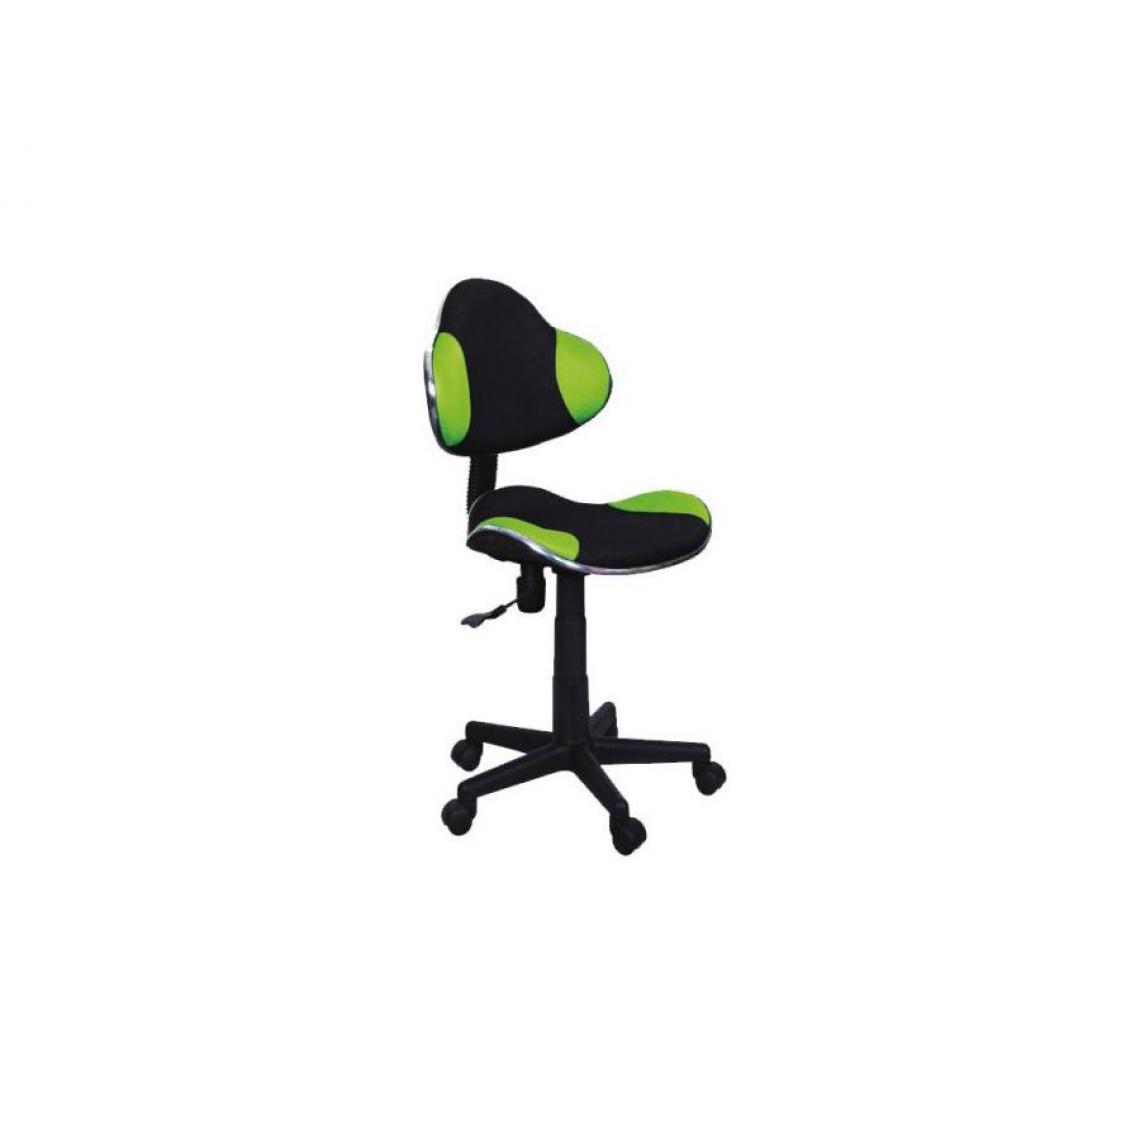 Hucoco - ABBEY | Chaise pivotante pour enfants | Hauteur réglable 80-92 cm | Tissu haute qualité | Chaise de bureau à roulettes - Vert - Chaises